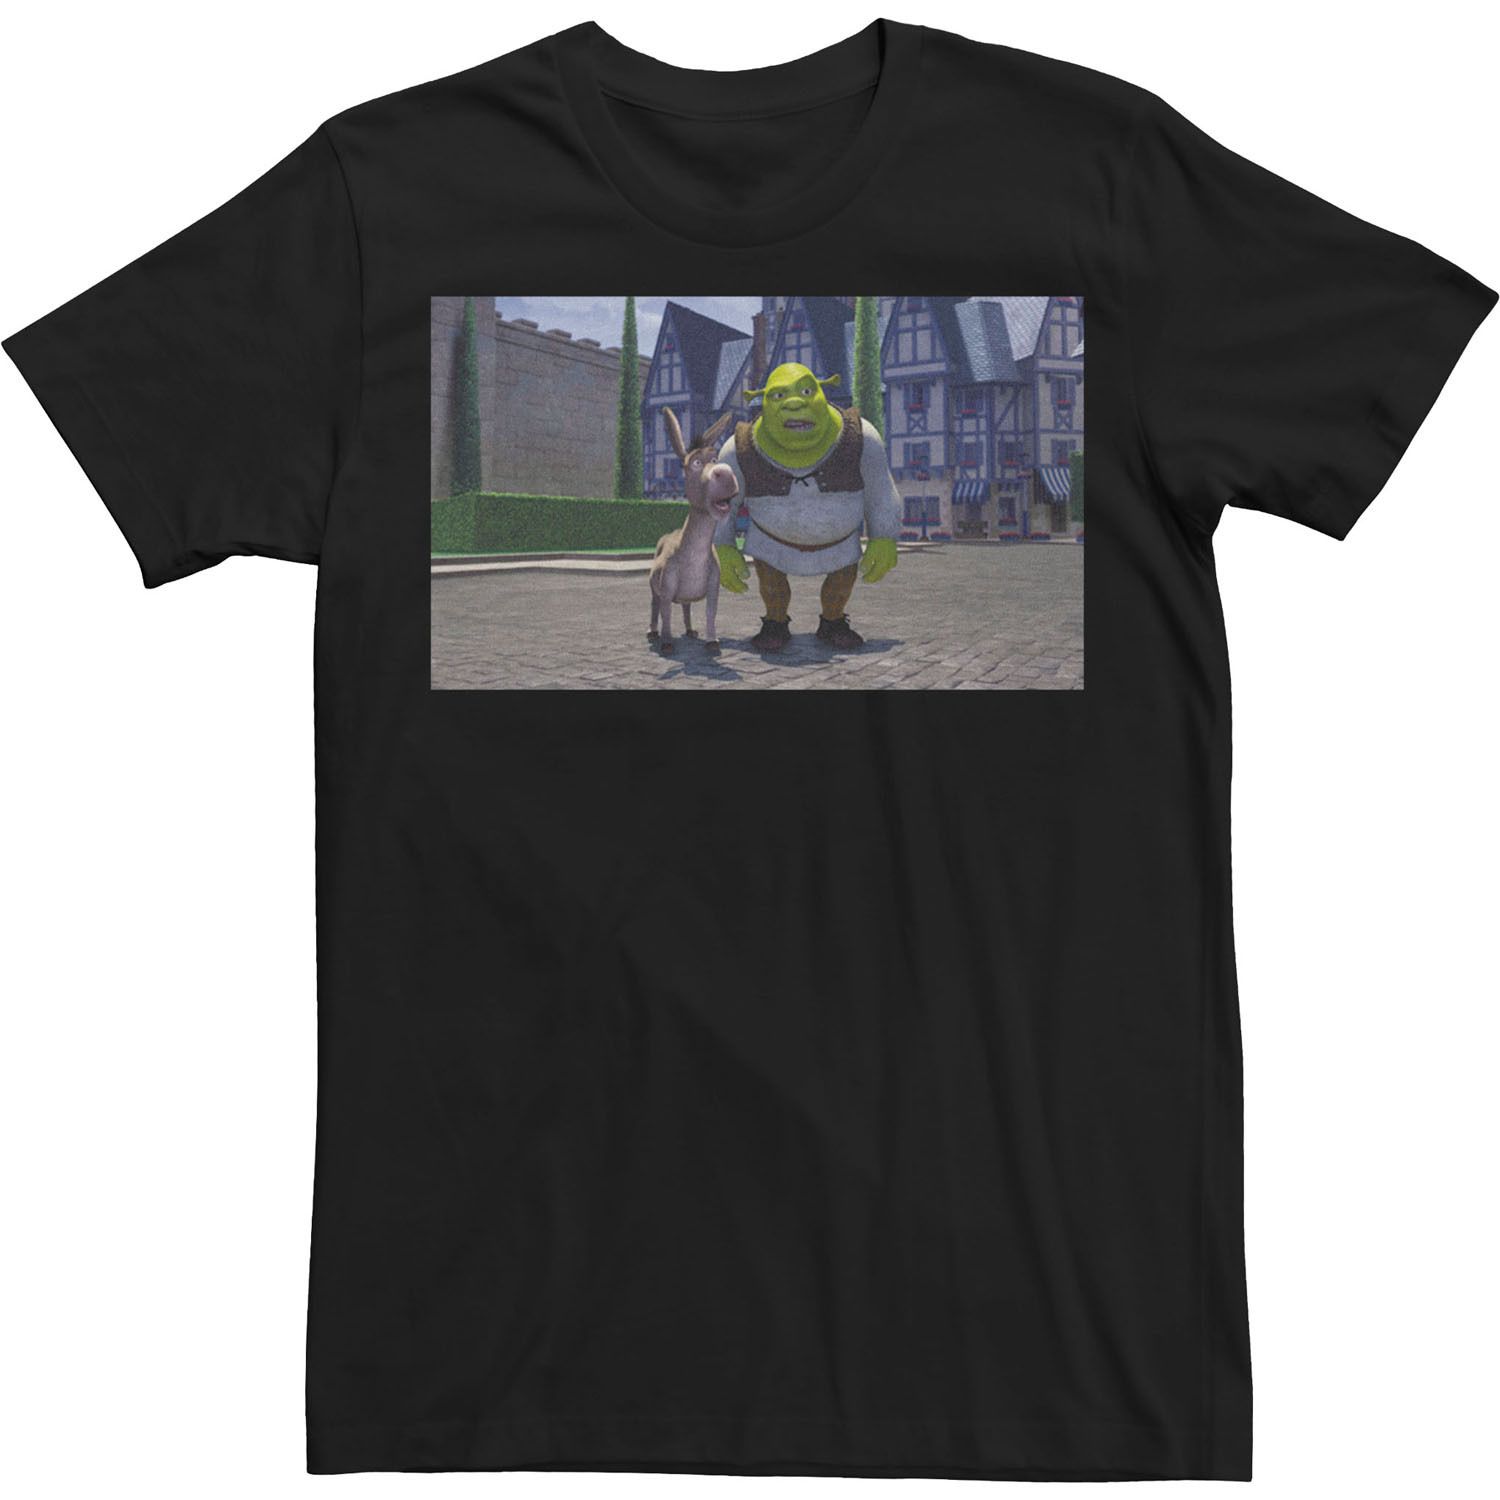 Мужская футболка с плакатом Shrek Wait Shrek Licensed Character